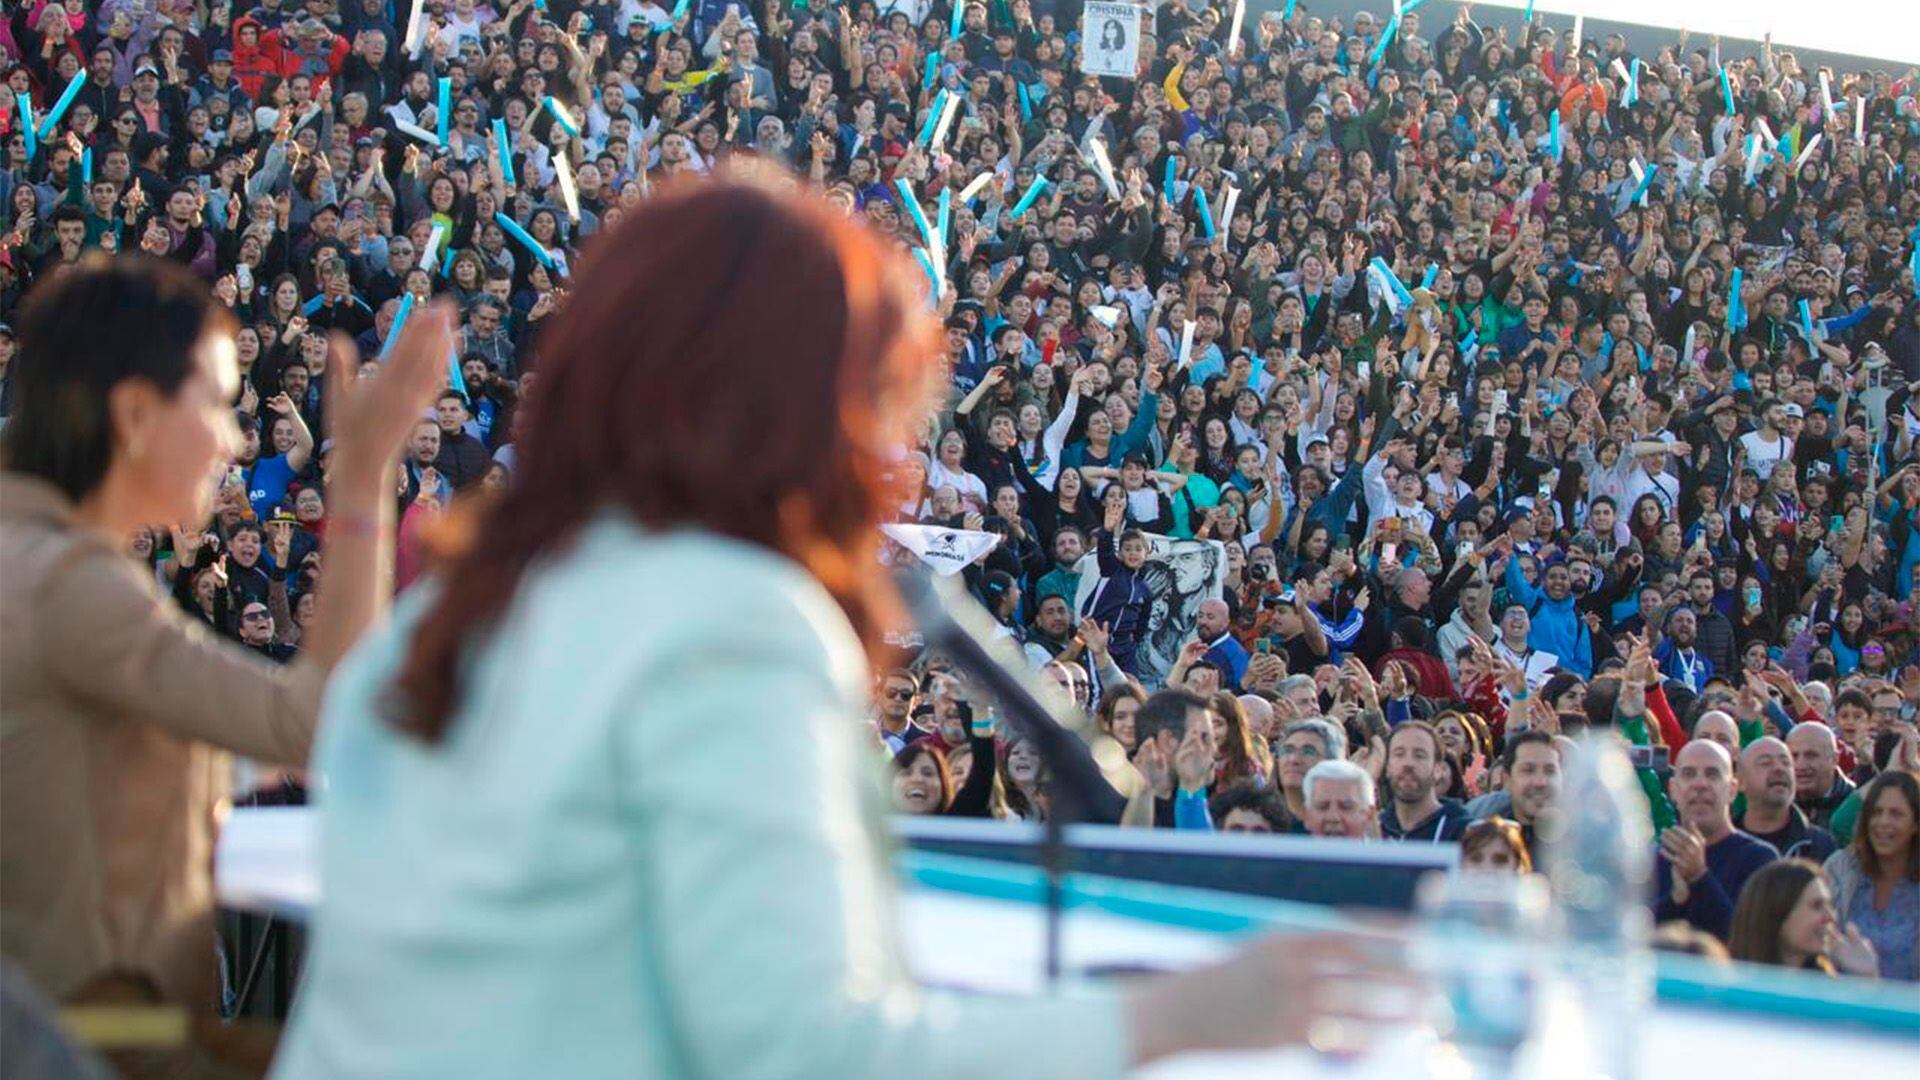 Cristina Kirchner con Mayra Mendoza